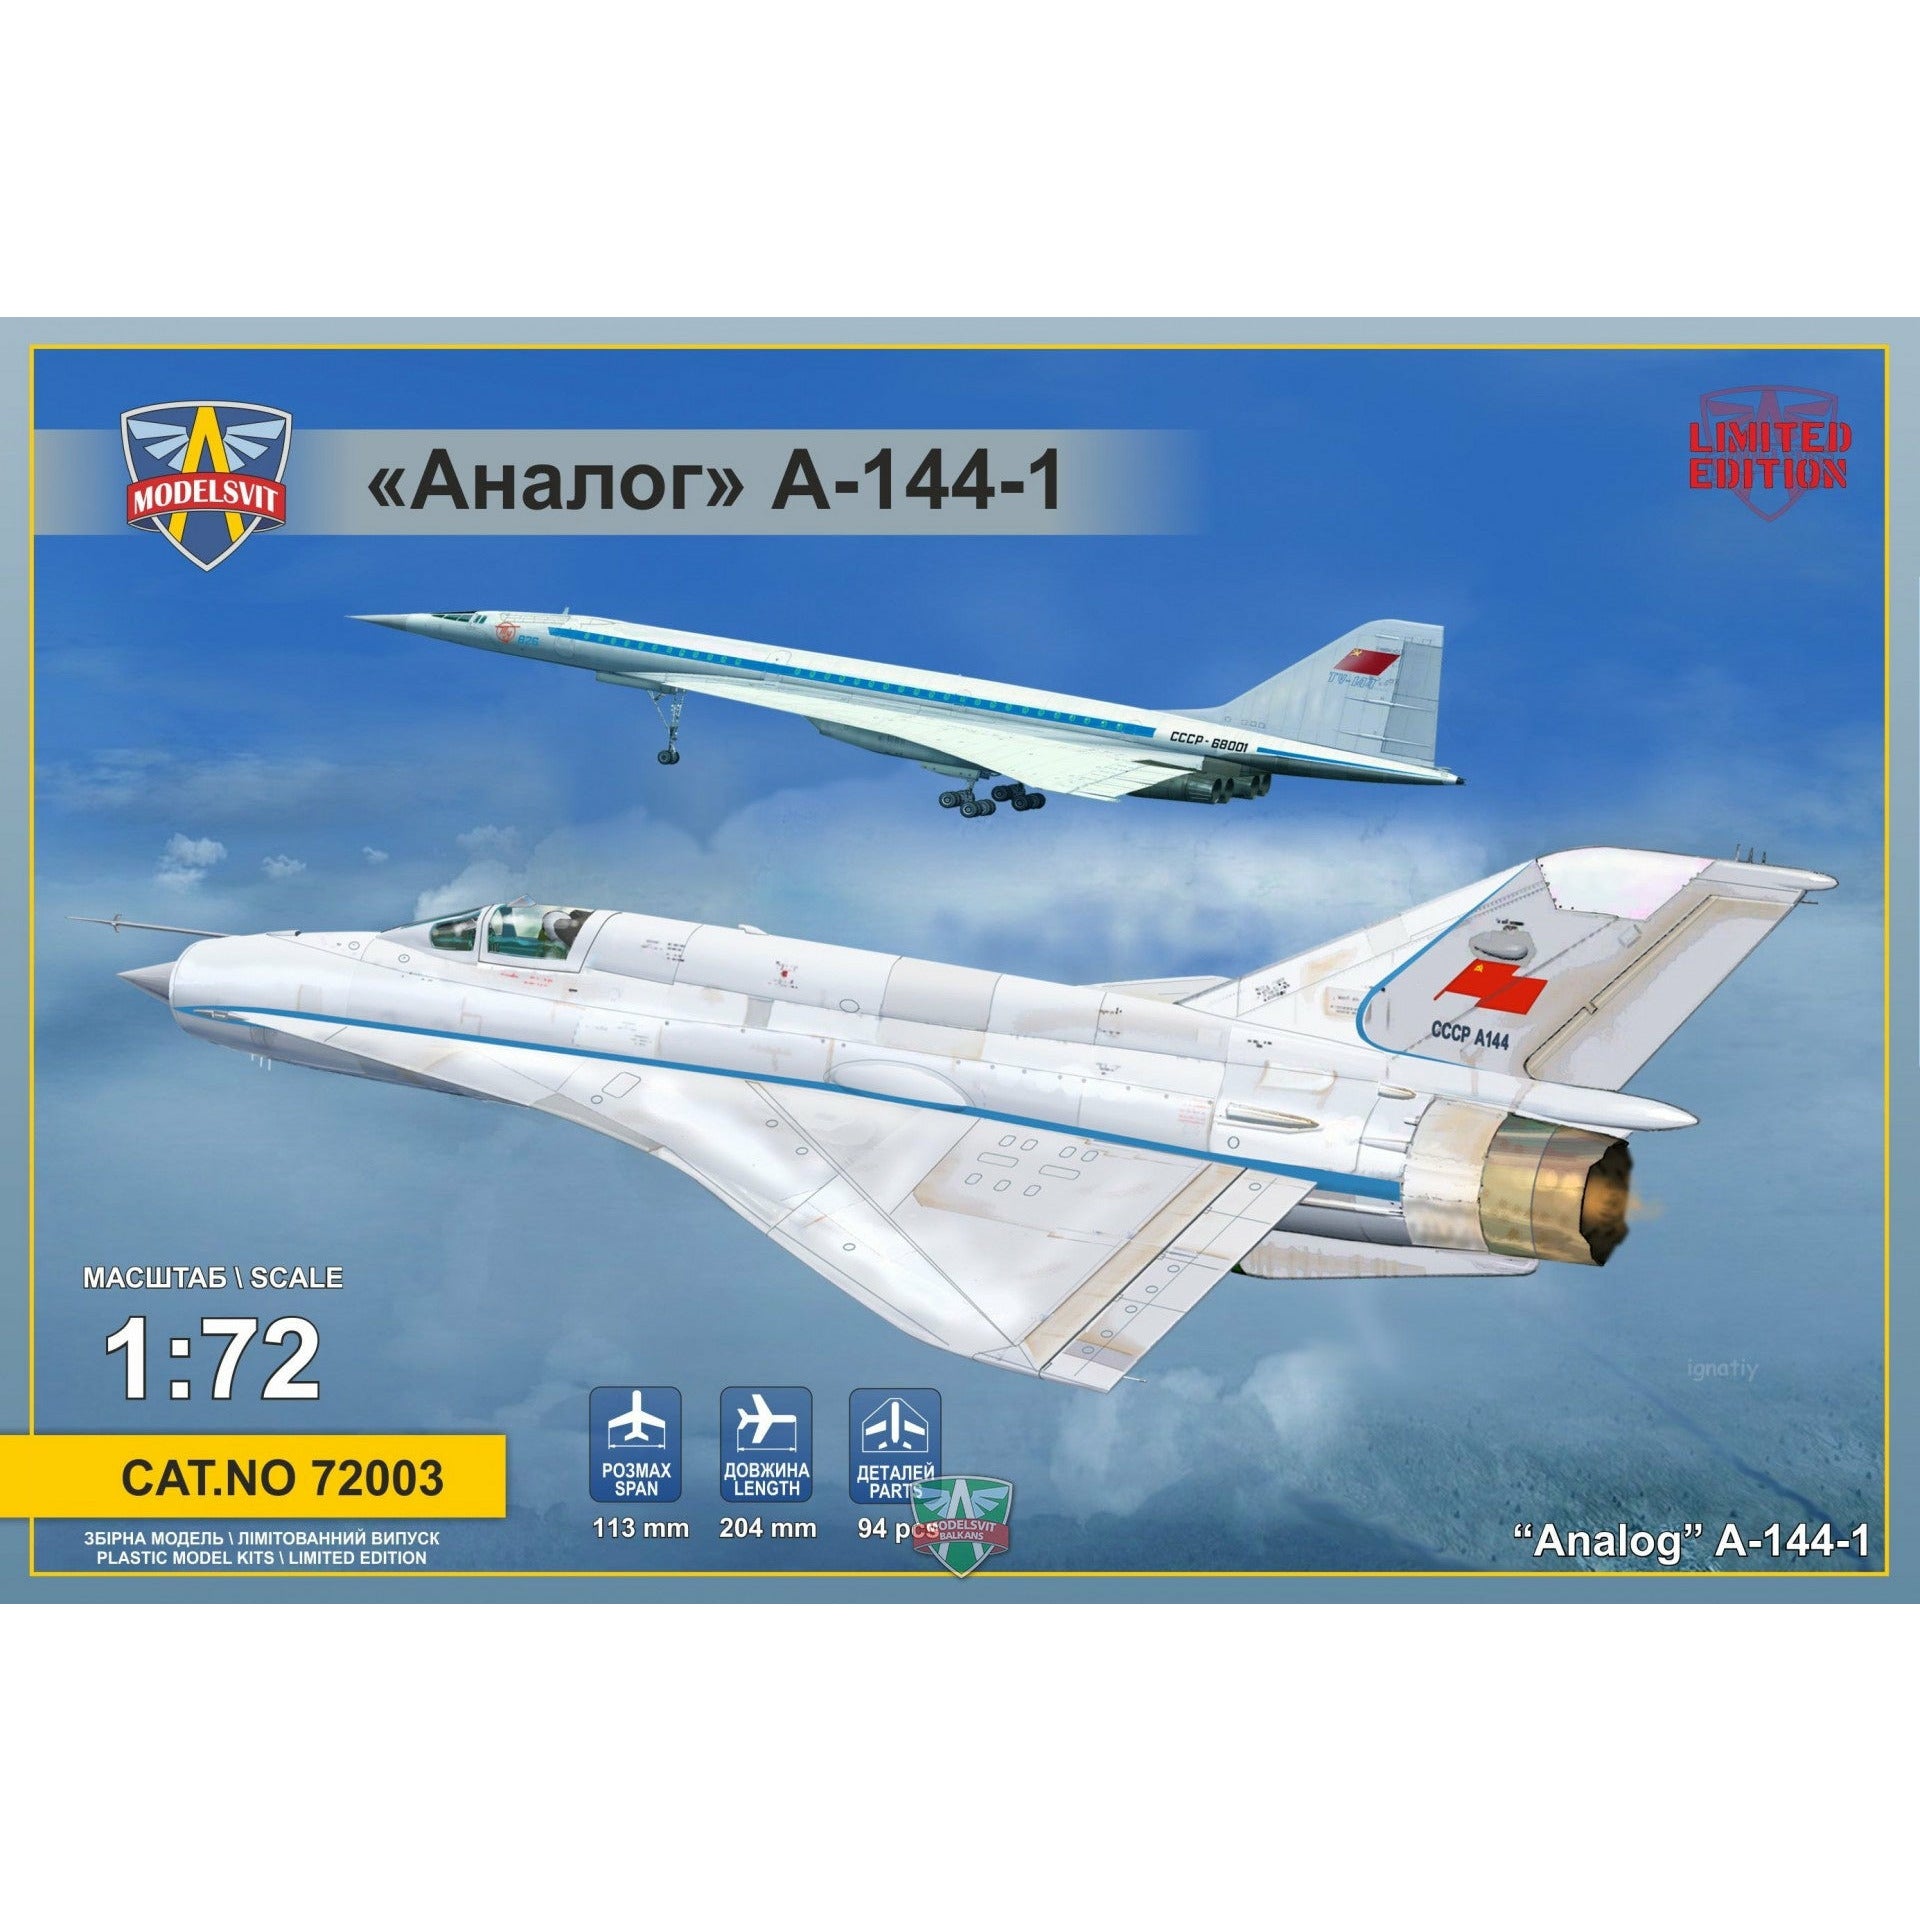 Analog A-144-1 (MiG21I-1) 1/72 #72003 by Modelsvit